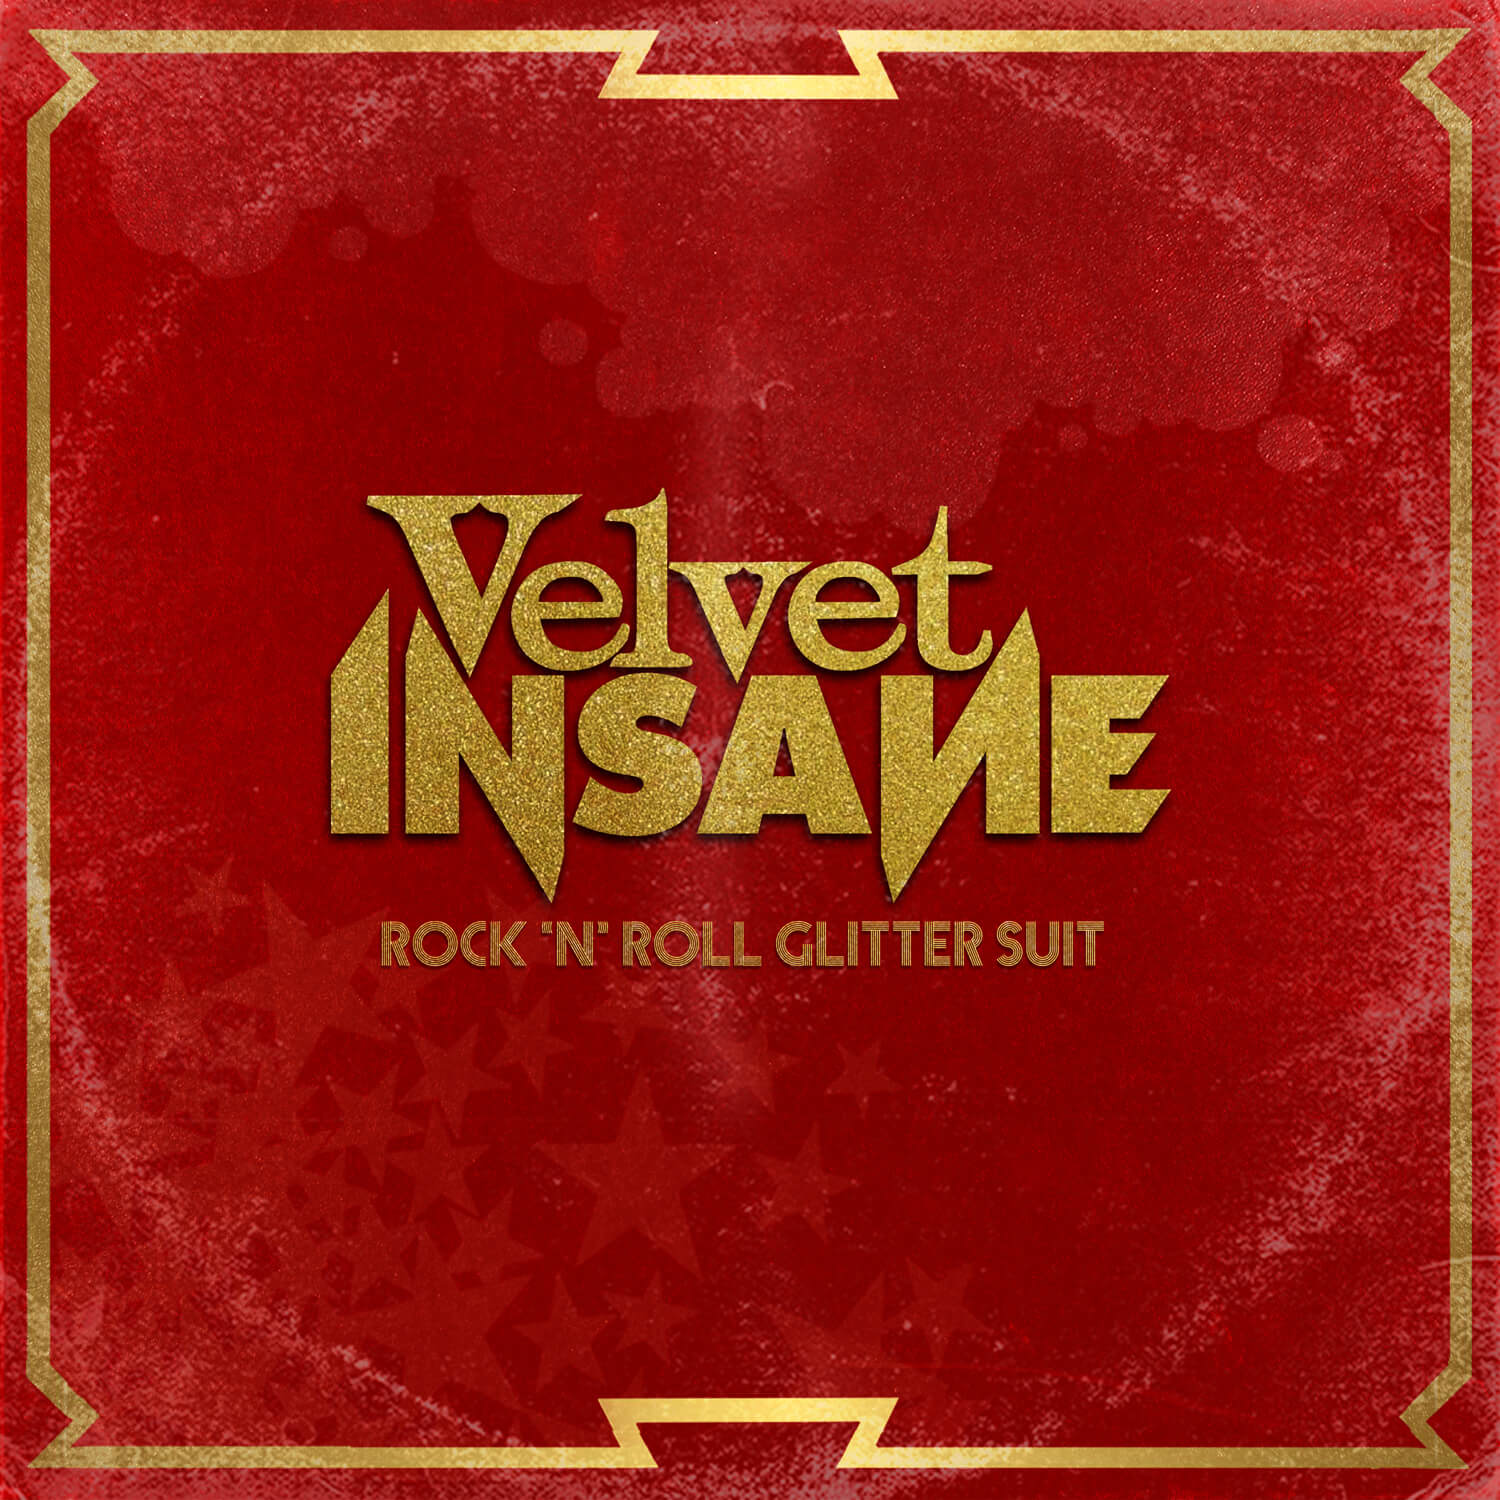 Velvet Insane top albums